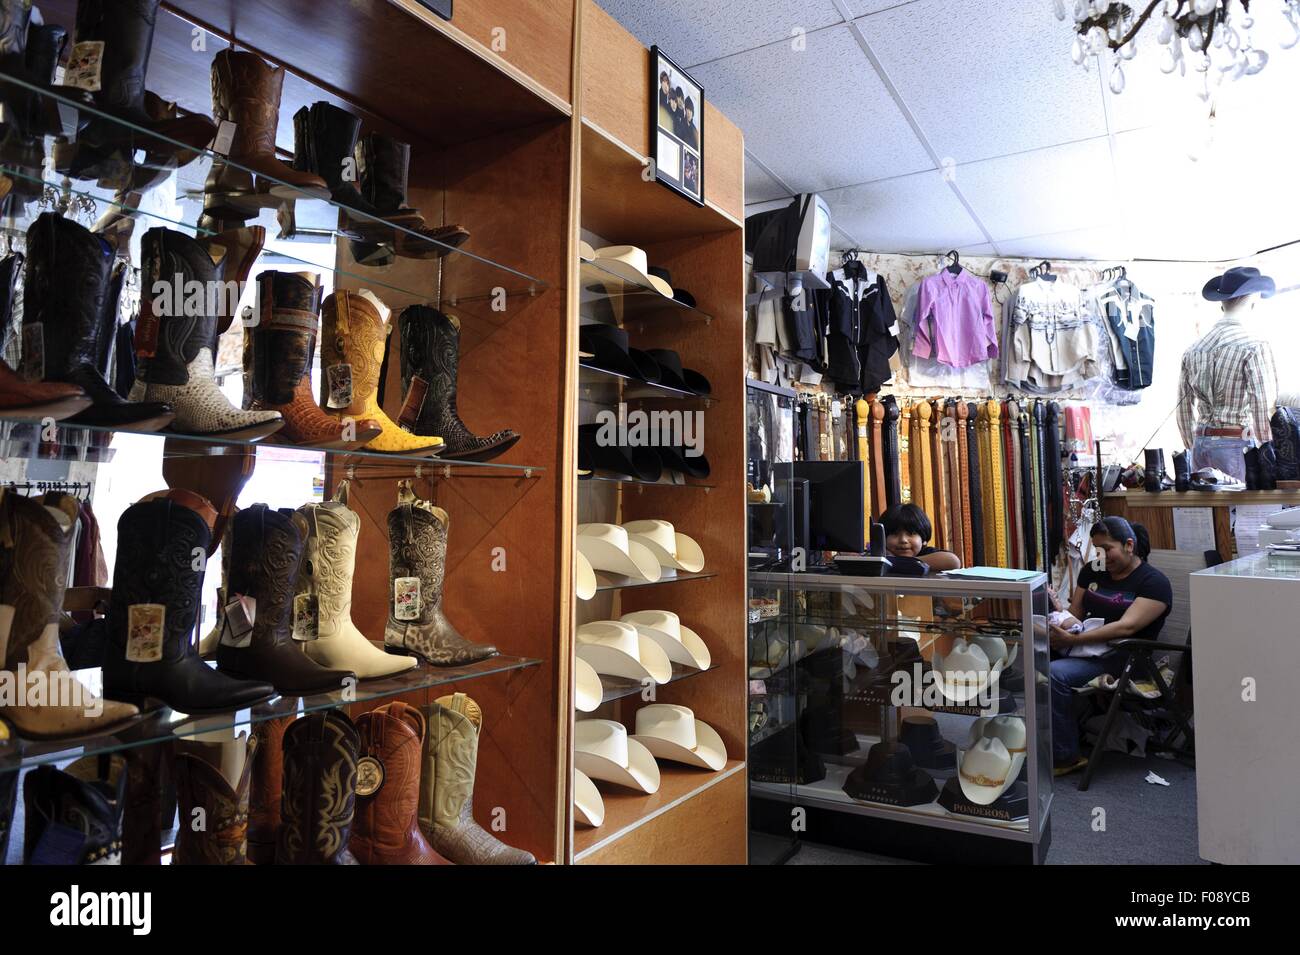 Gente sentada en la tienda de ropa y zapatos en New York, EE.UU. Foto de stock